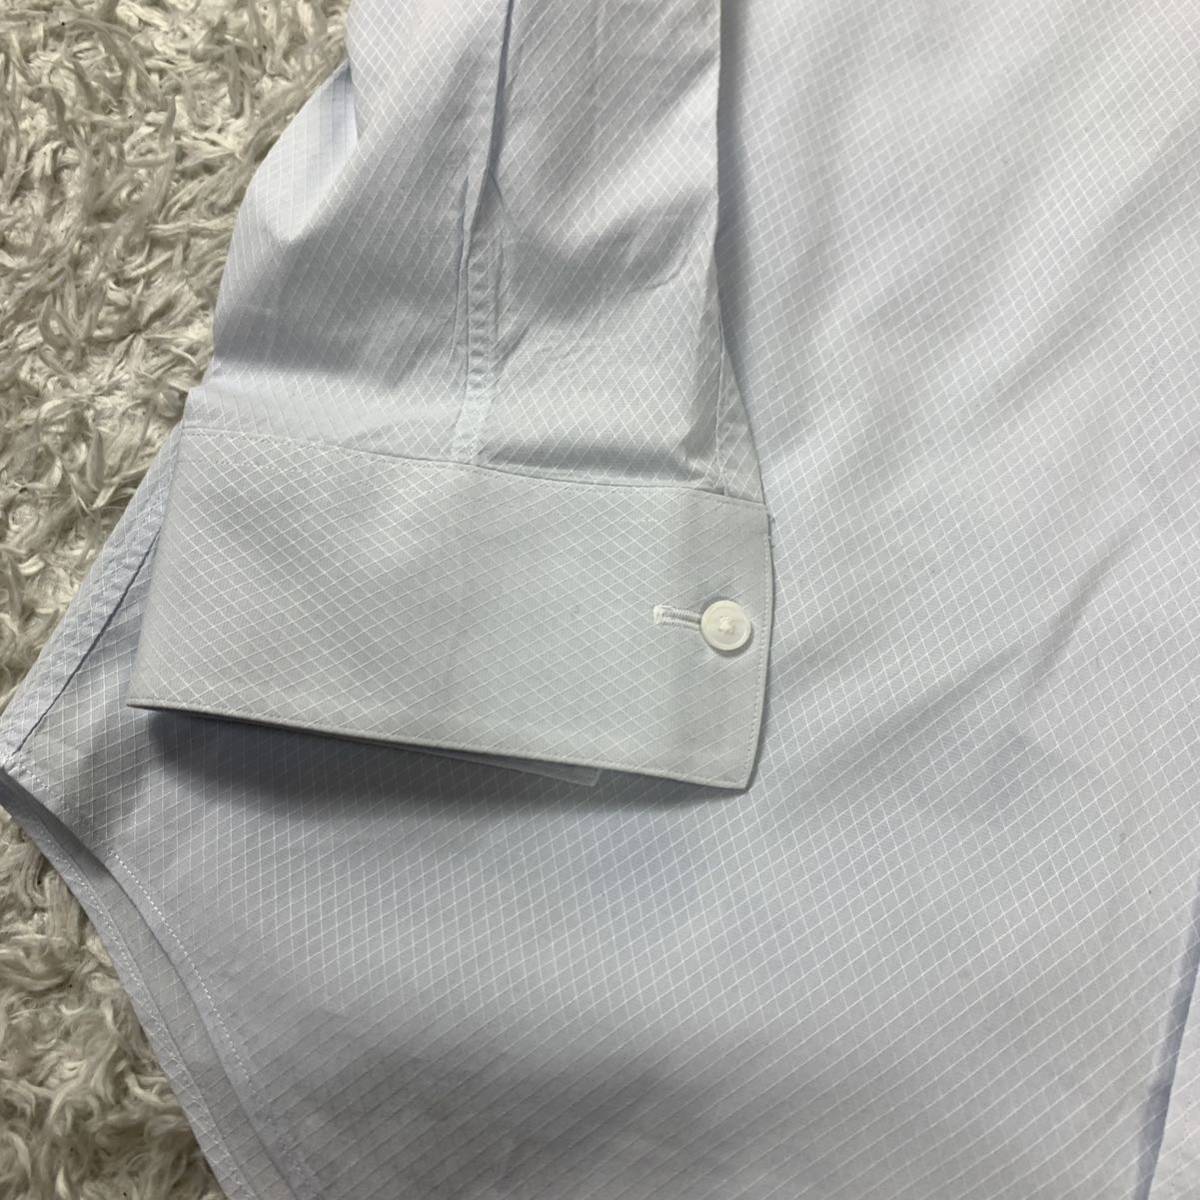  Calvin Klein long sleeve shirt light blue cotton men's YA5620